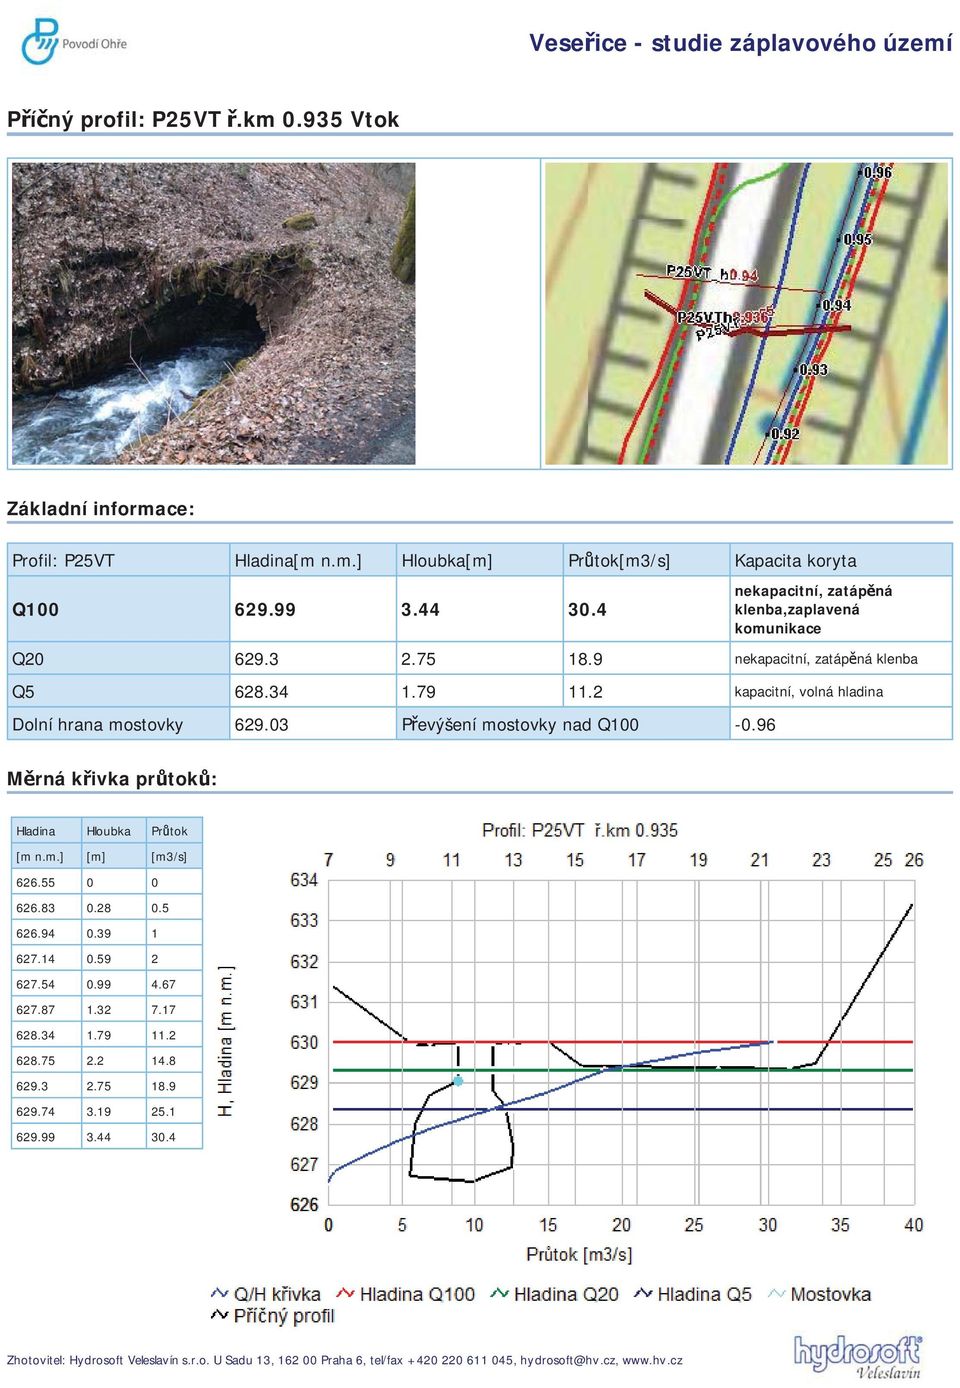 2 kapacitní, volná hladina Dolní hrana mostovky 629.03 P evýšení mostovky nad Q100-0.96 M rná k ivka pr tok : Hladina Hloubka Pr tok [m n.m.] [m] [m3/s] 626.